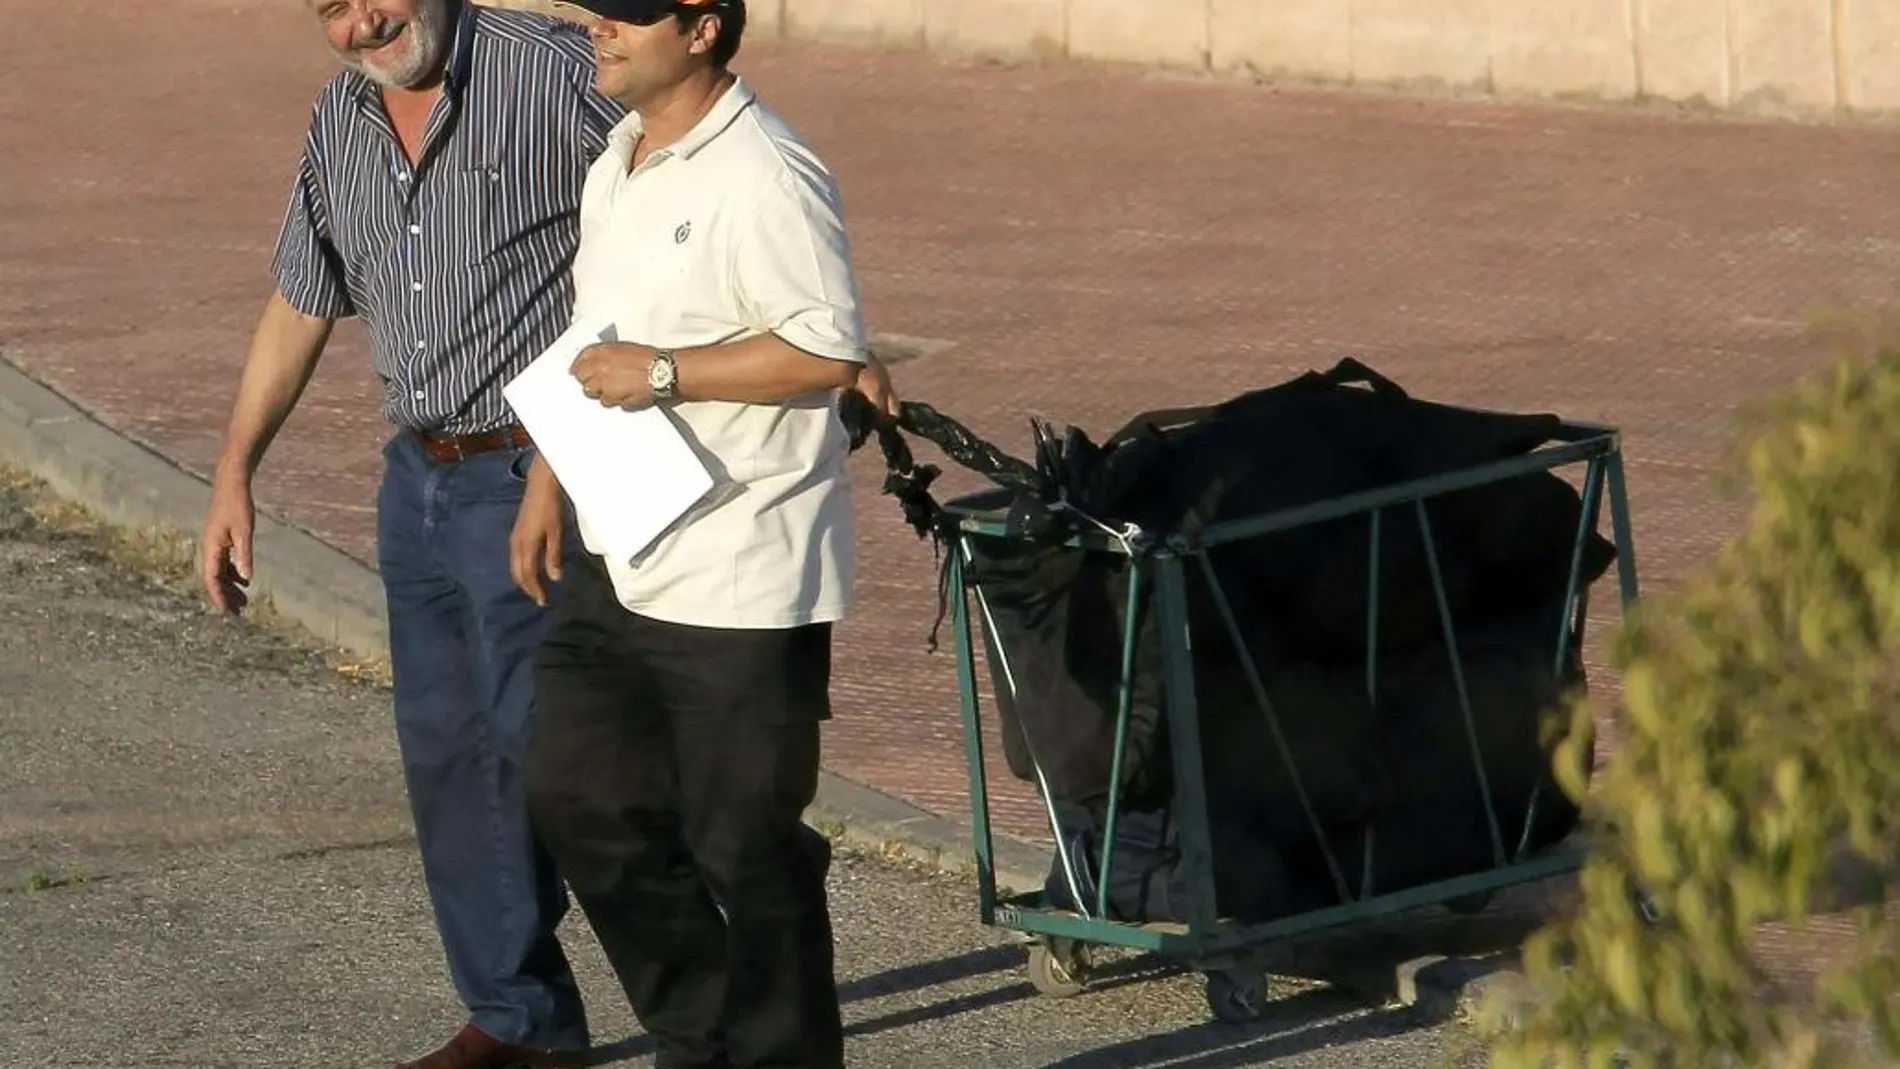 Imagen de 2012 del narcotraficante abandonando la prisión de Navalcarnero tras haber cumplido varias condenas por tráfico de drogas